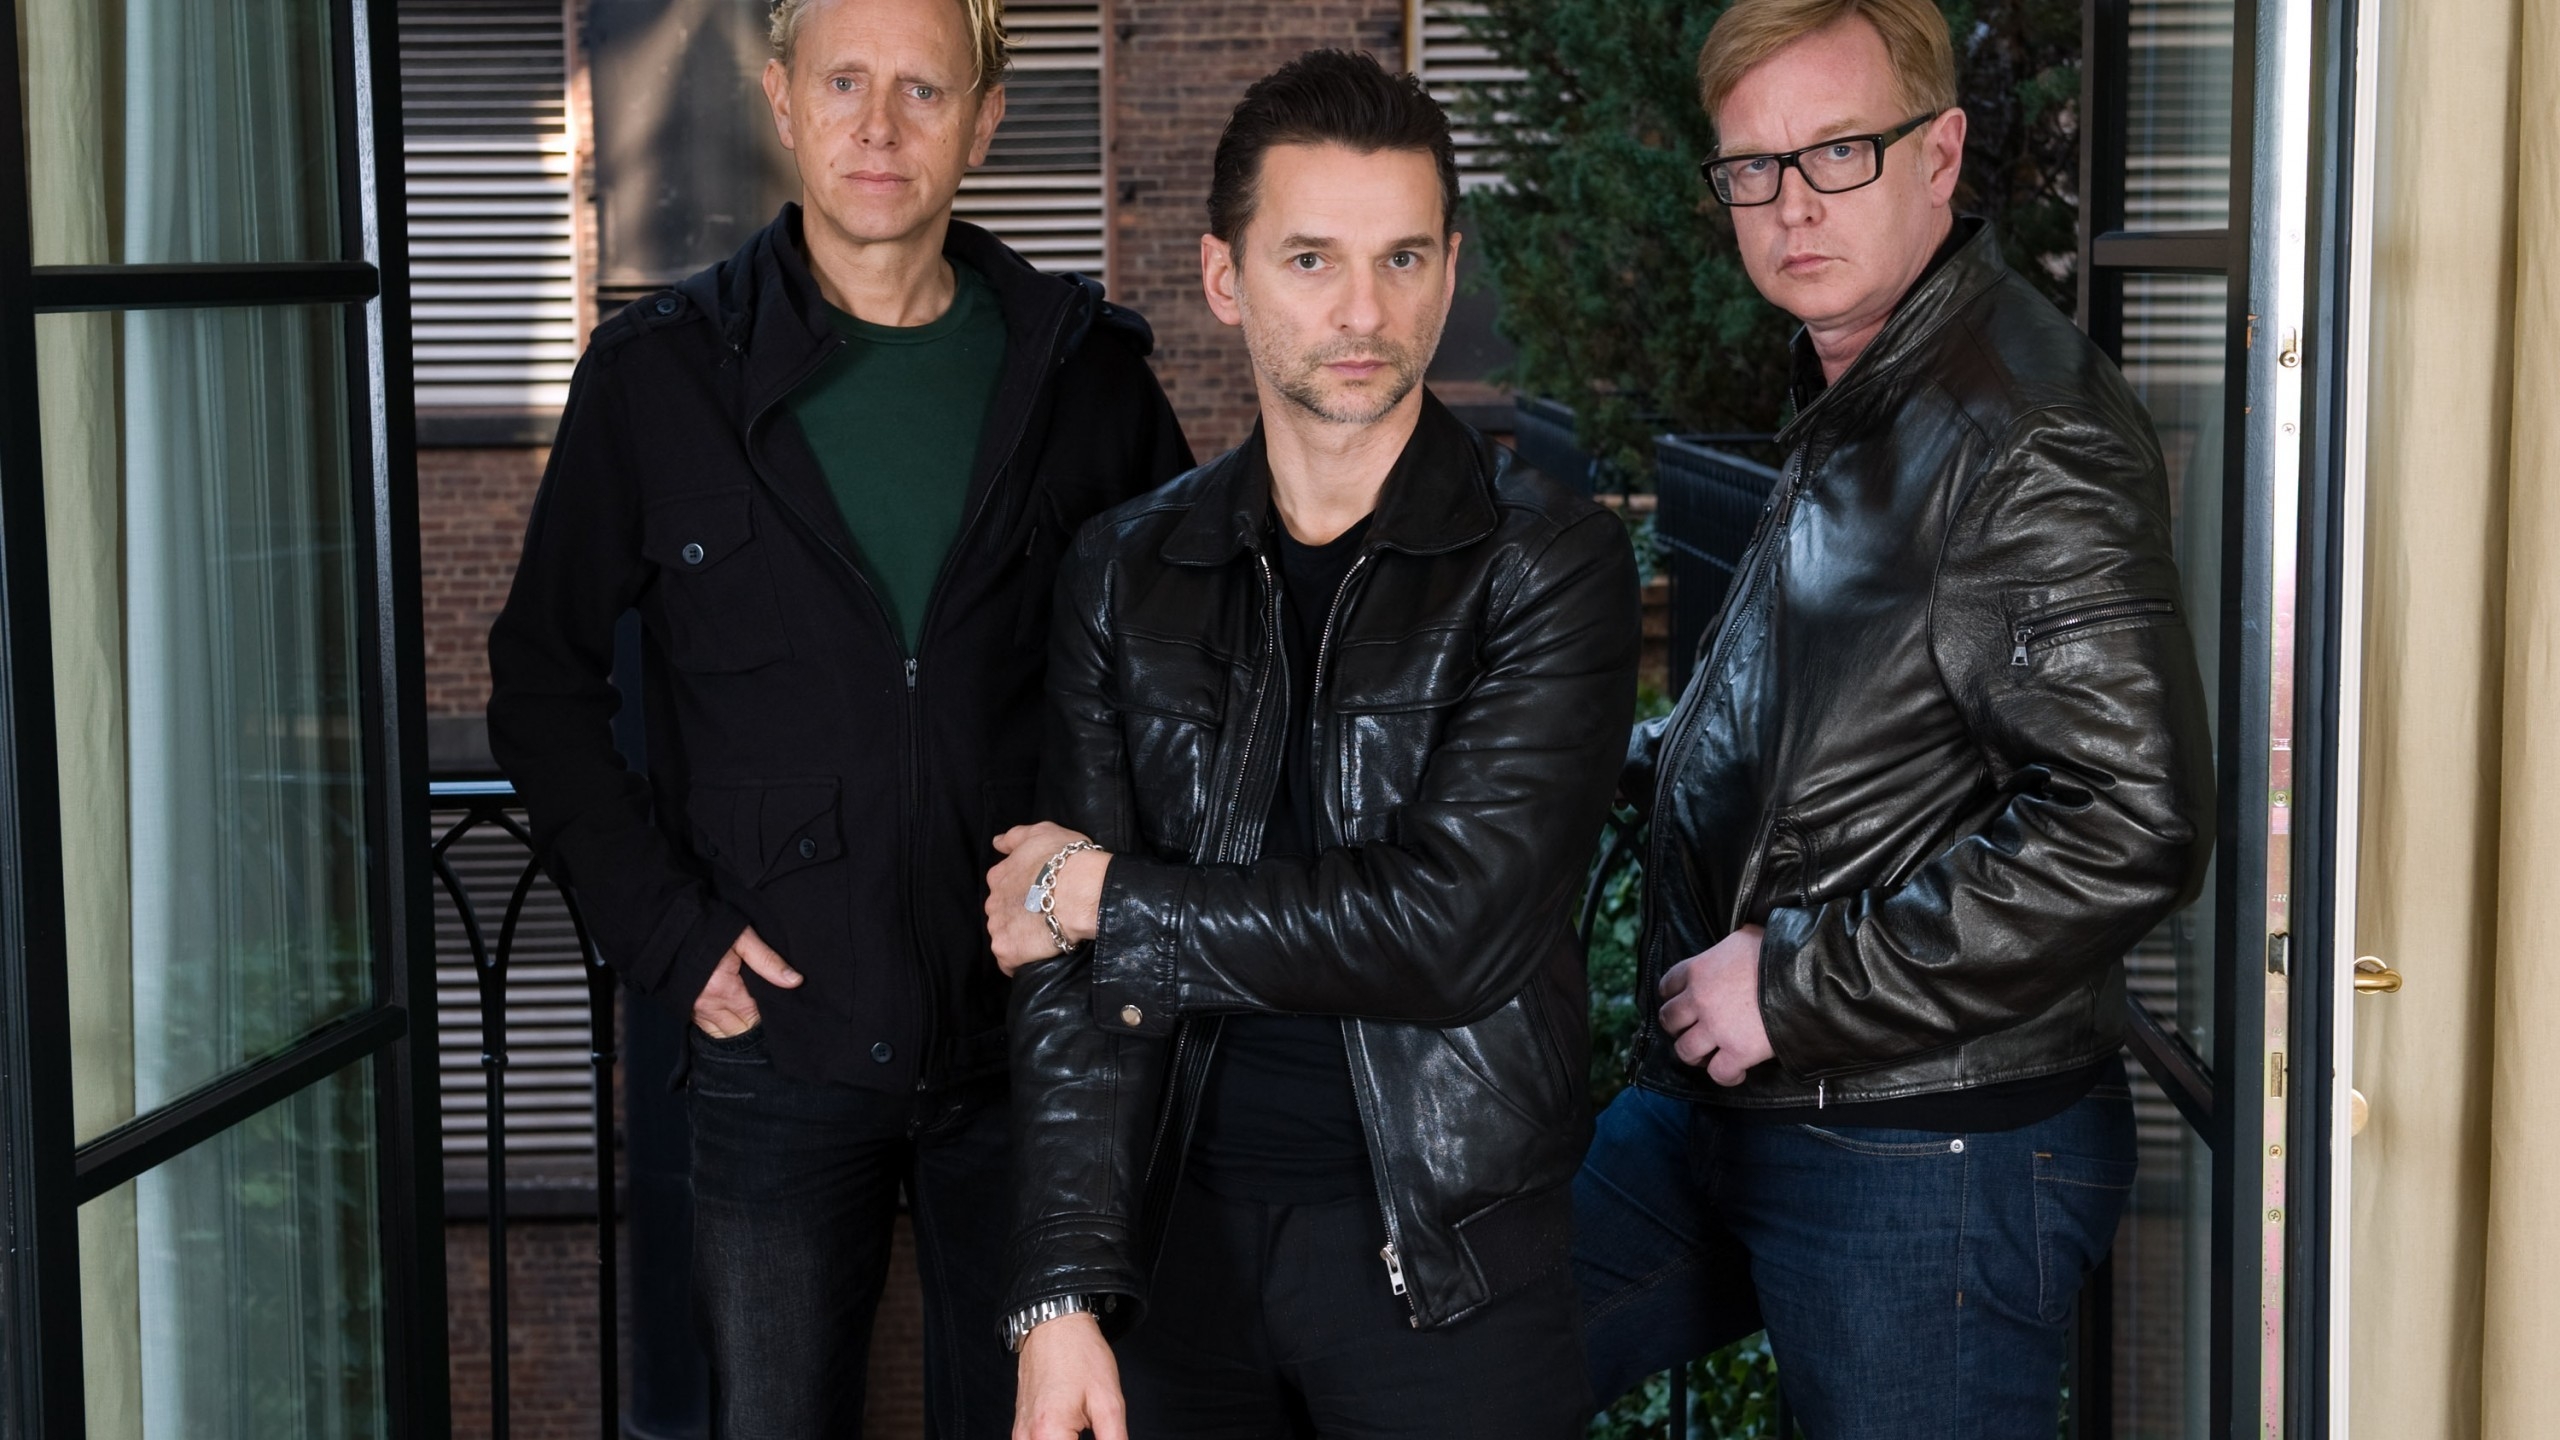 Depeche Mode Members Poster for 2560x1440 HDTV resolution